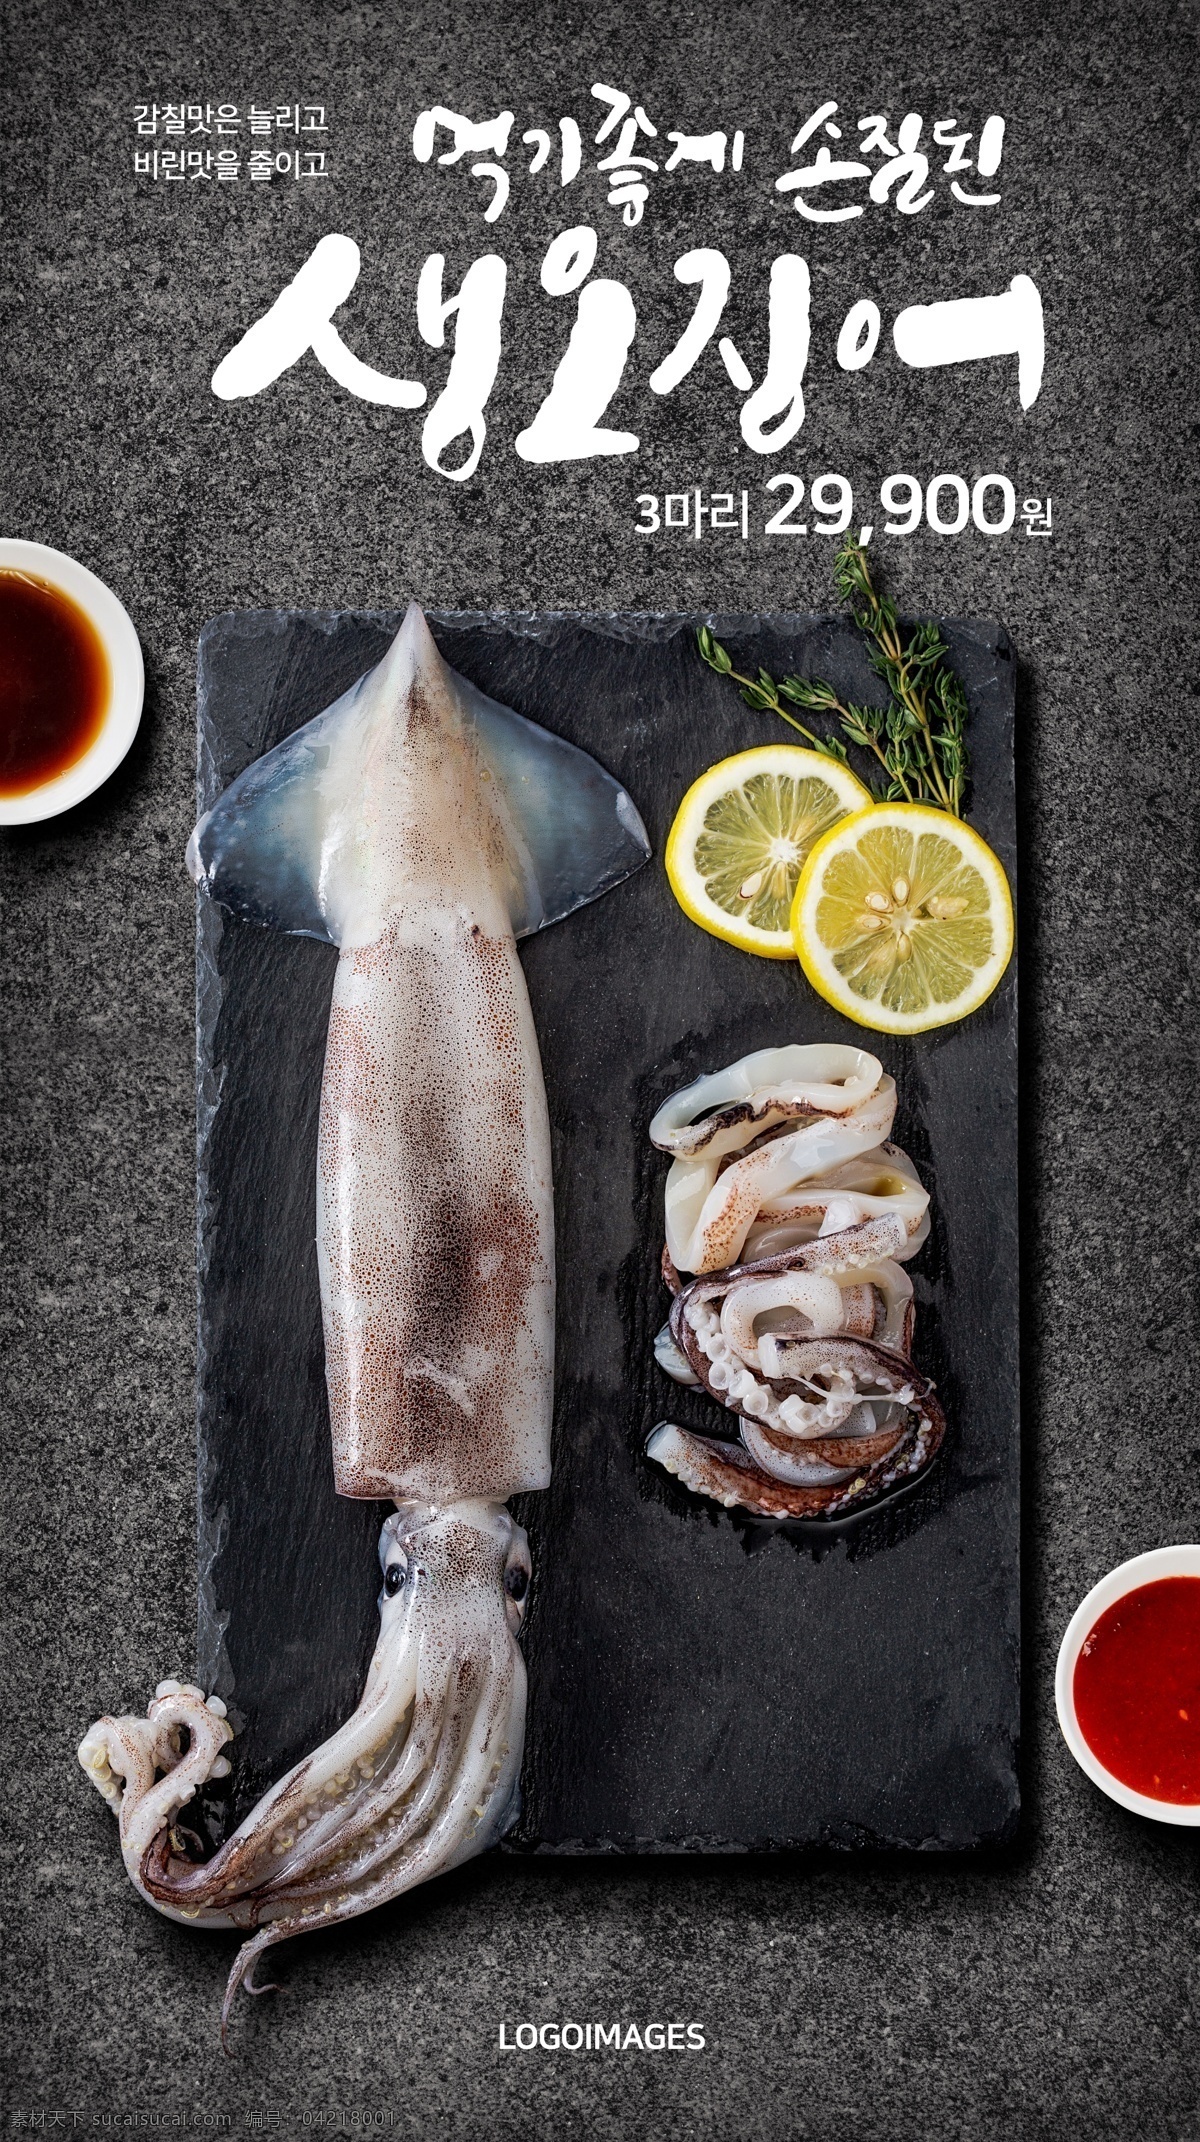 鱿鱼 海鲜 水产 韩国 超市 广告 韩国海鲜 超市广告 超市招贴 招贴设计